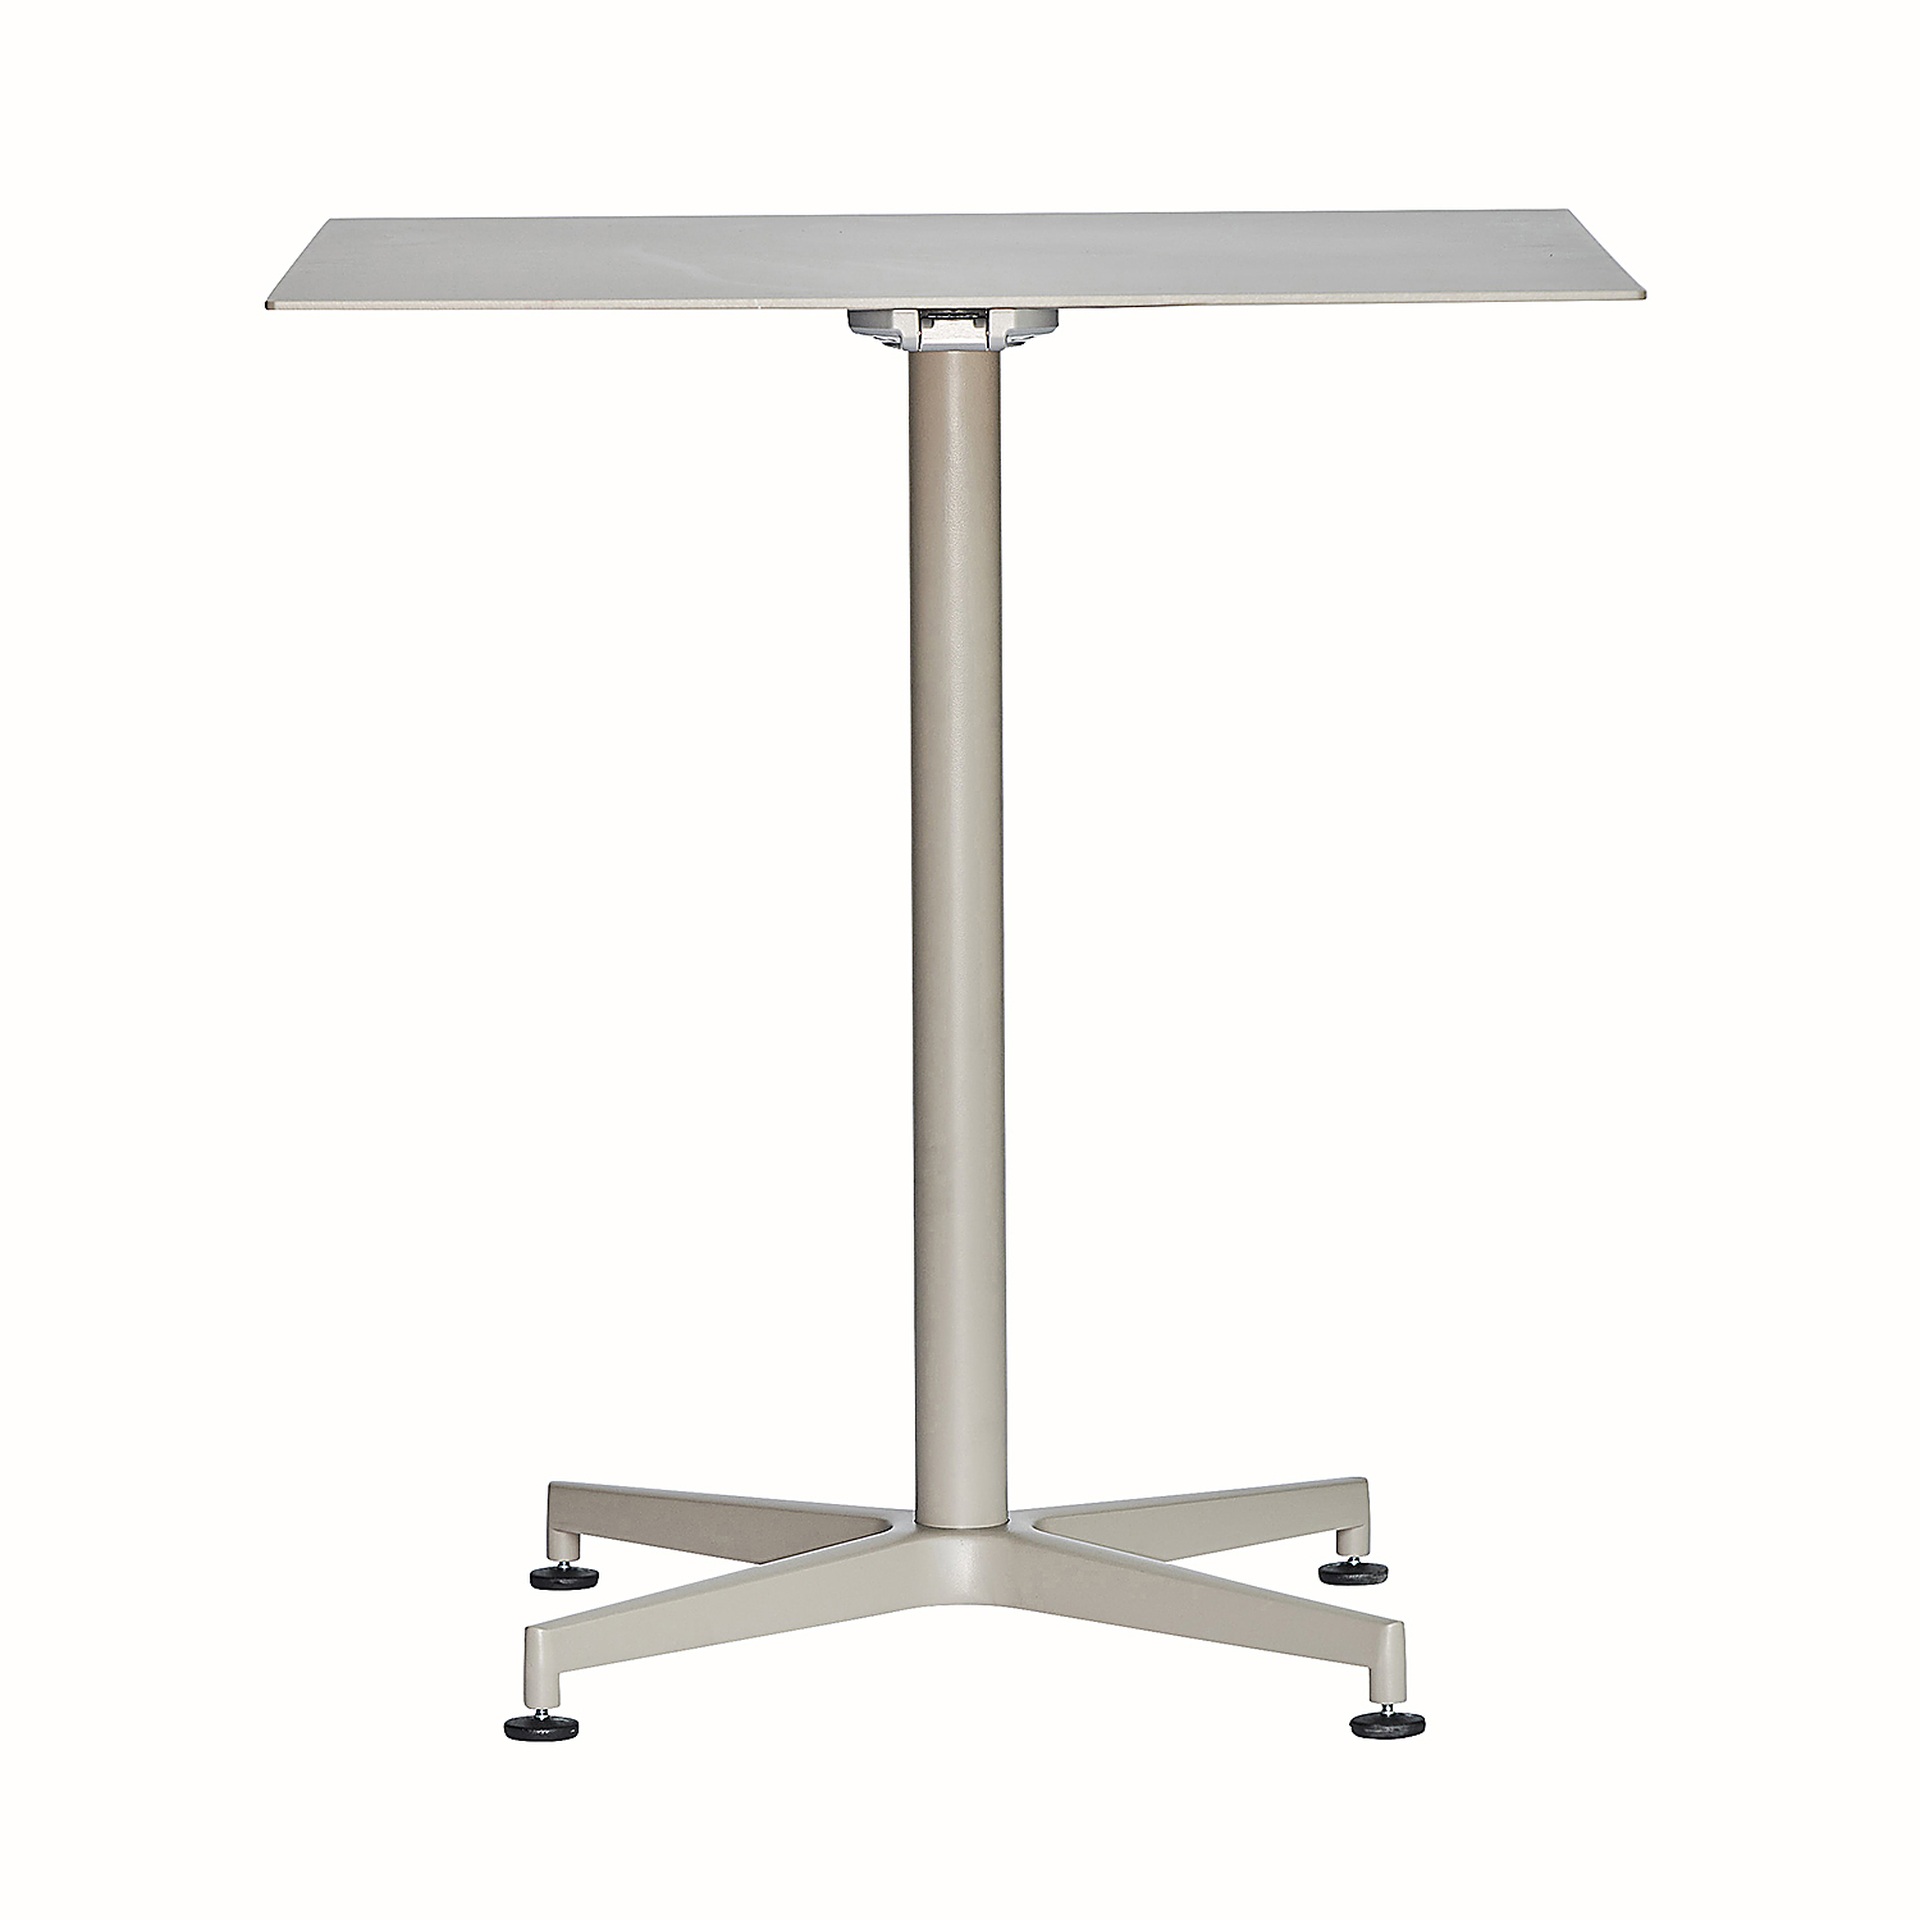 Der Klapptisch Vega in eckiger Form besitzt ein modernes Design. Hergestellt wurde der Tisch aus Aluminium und ist in verschieden Farben erhältlich. Der Tisch ist von der Marke Jan Kurtz.